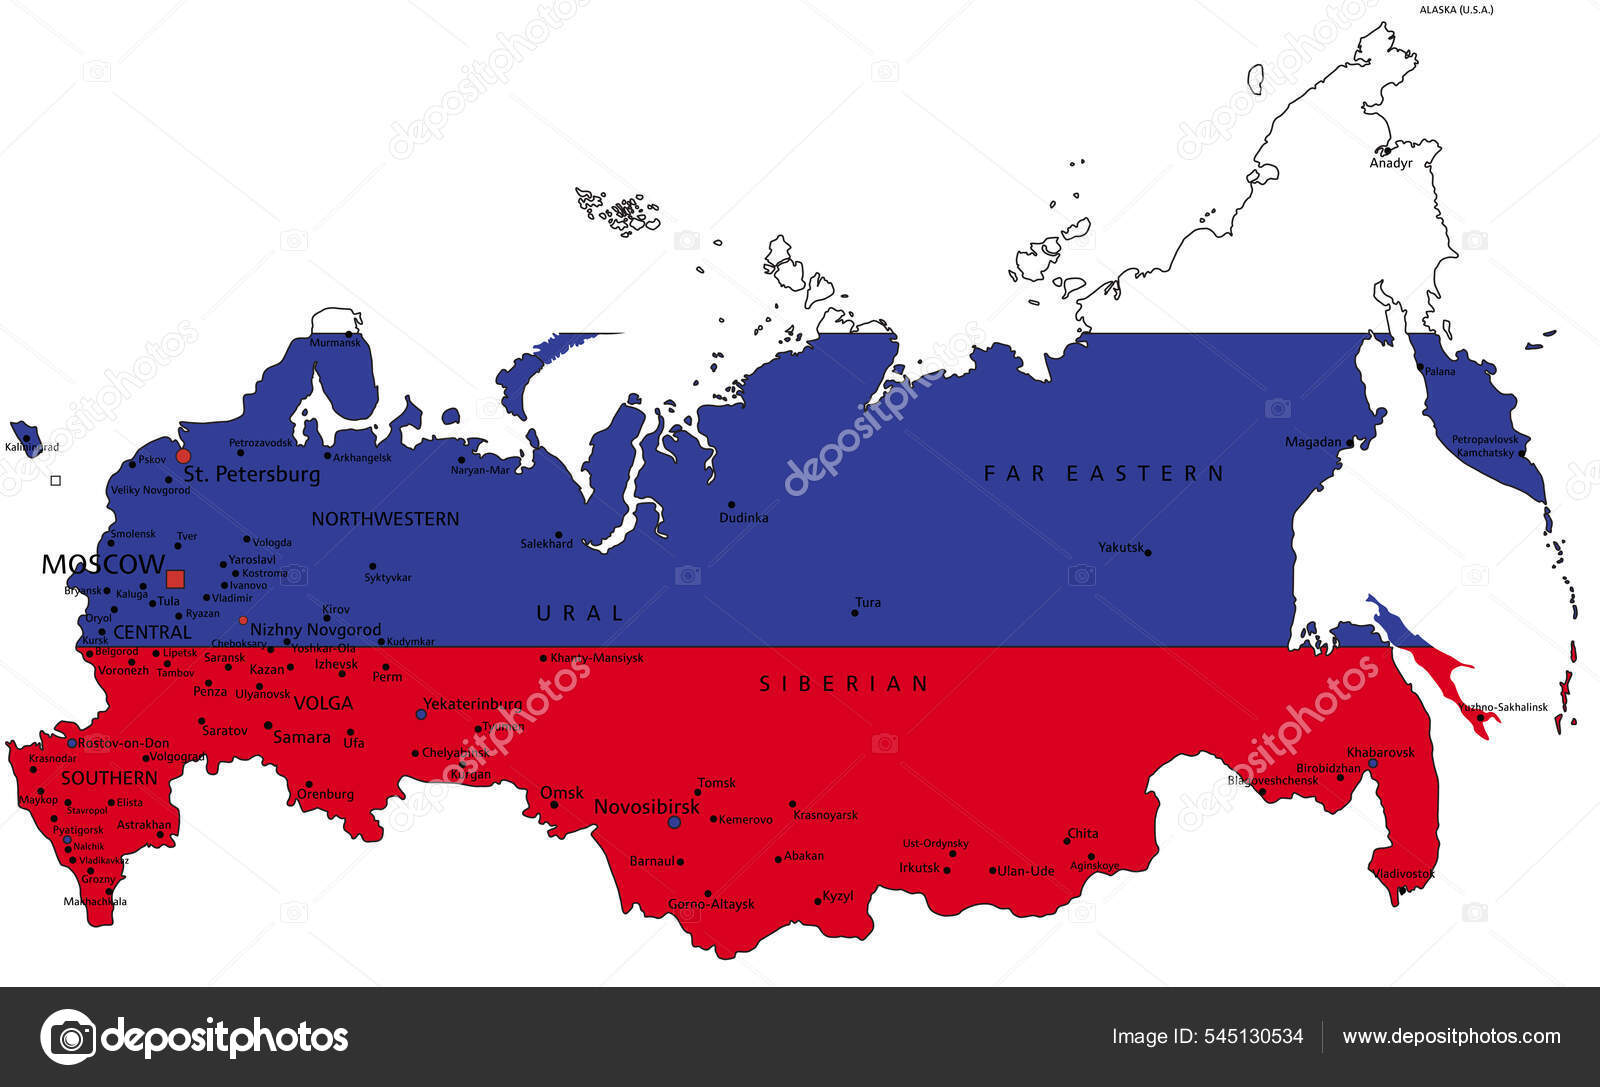 Mapa altamente detalhado da federação russa com capital de bandeira e  pequeno mapa do mundo